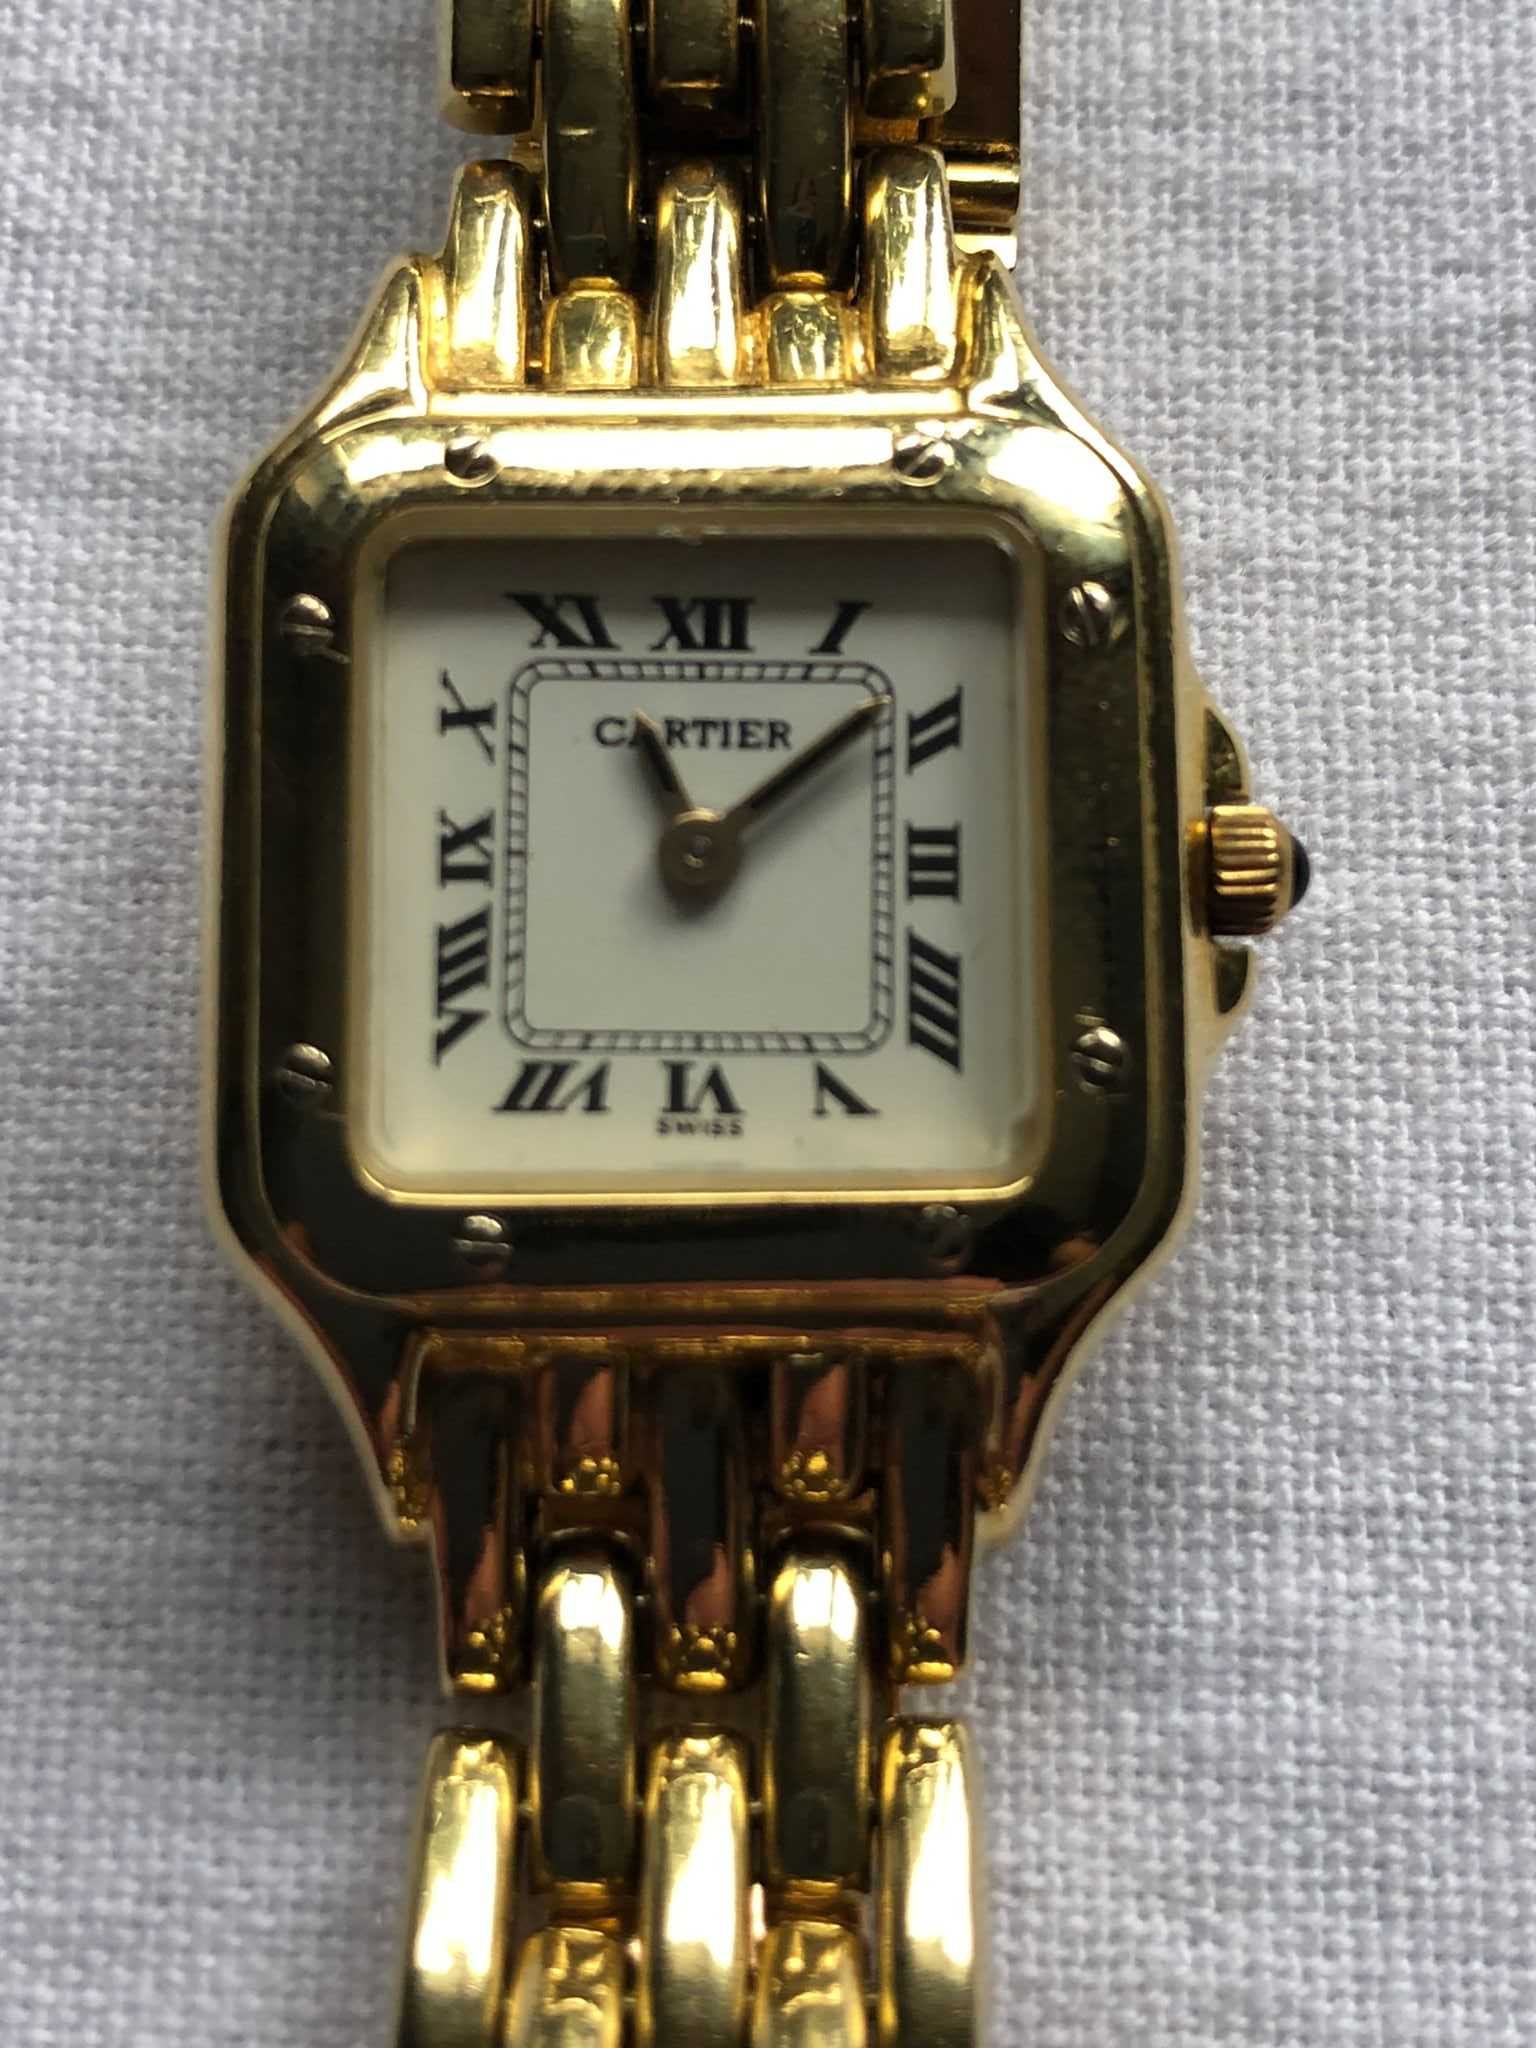 Zegarek Cartier Panthere damski ...złoto 18 k. WYJĄTKOWA OKAZJA !!